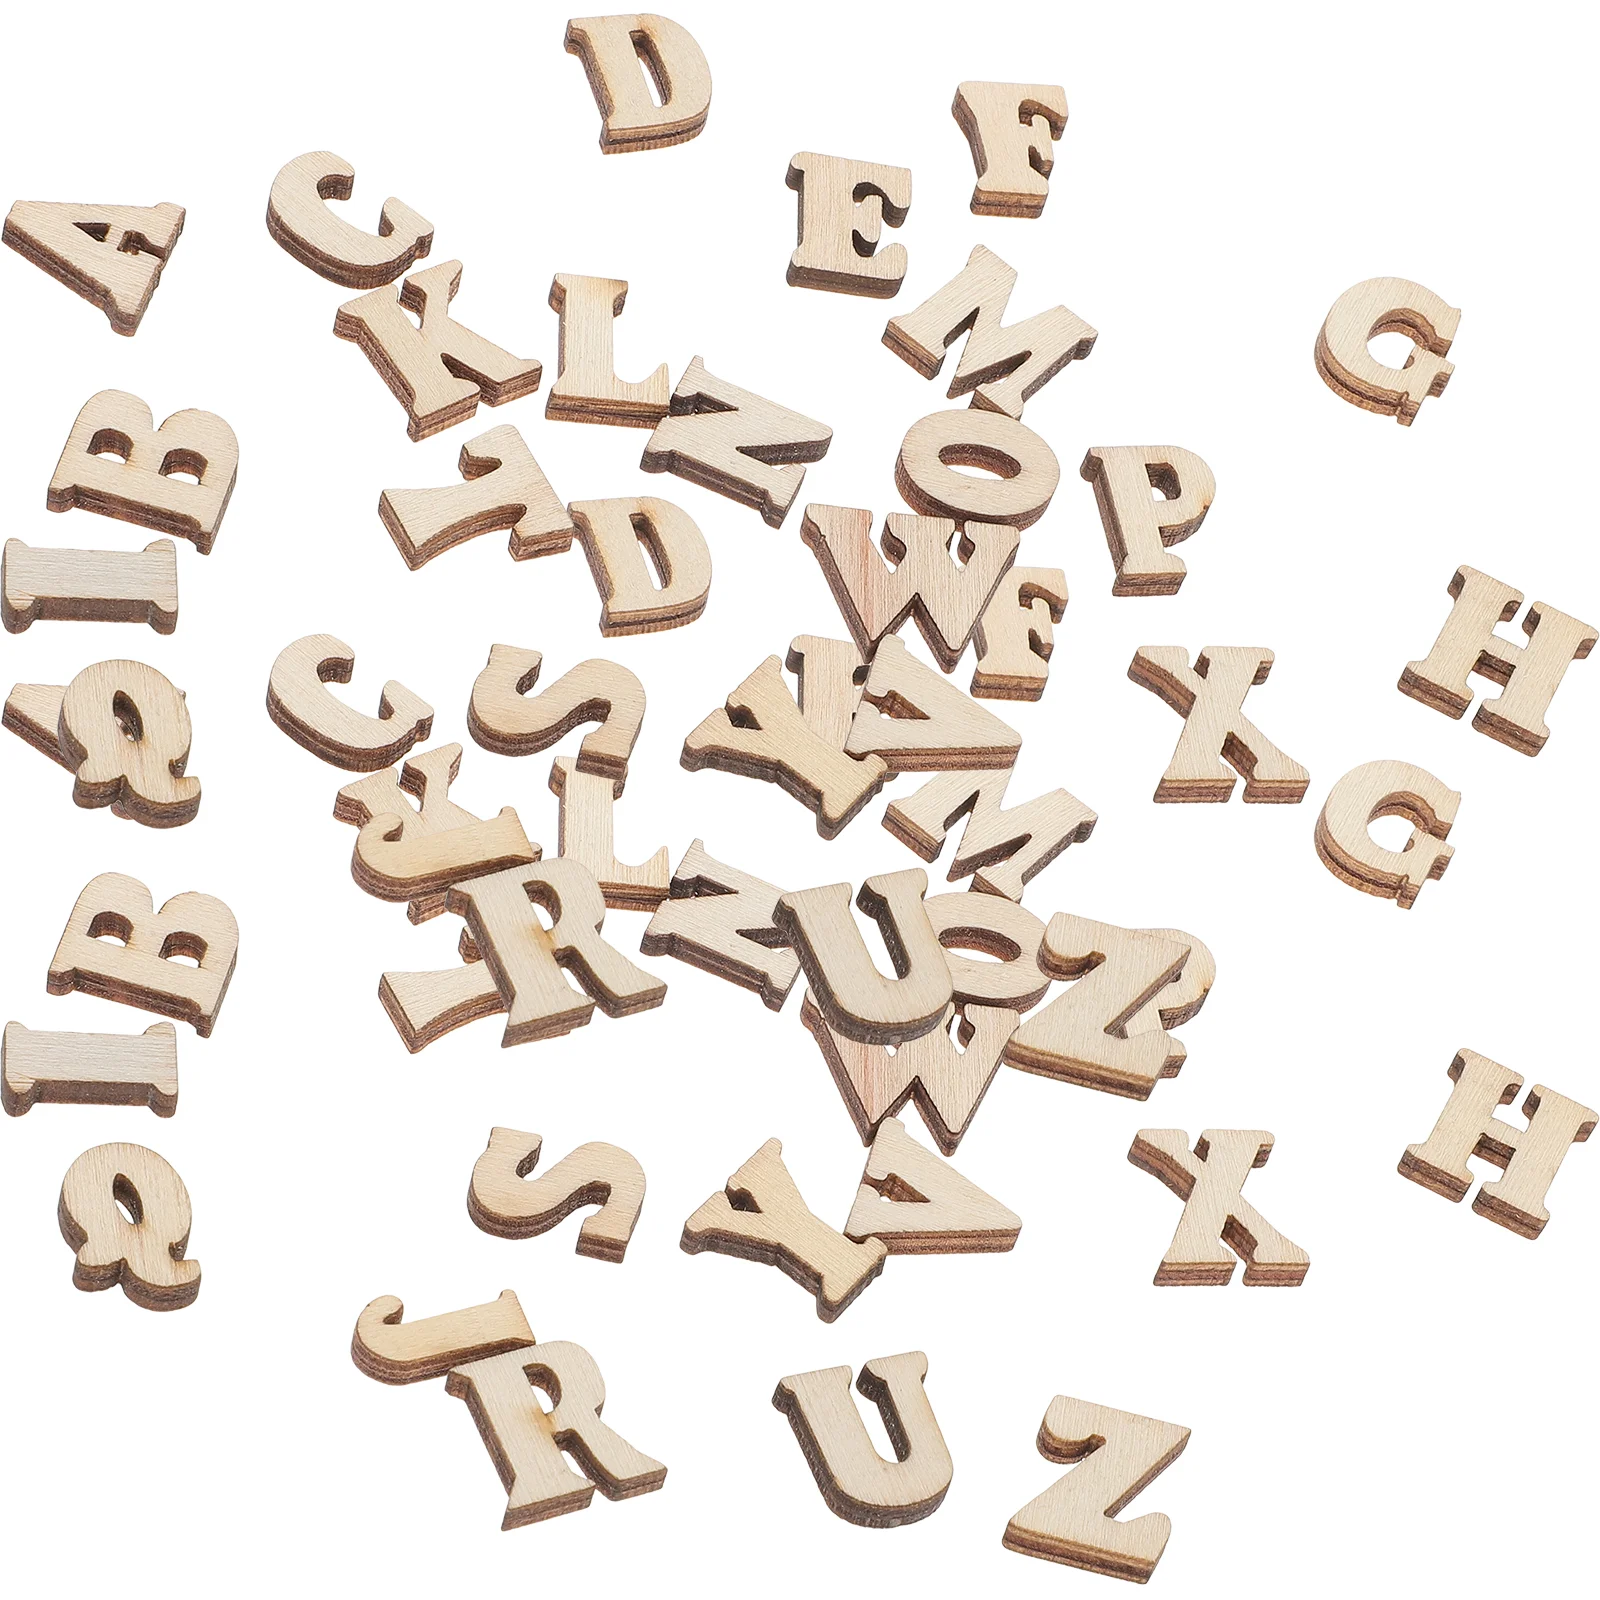 

200Pcs Wooden English Letters Wood Alphabet Letters DIY Unpainted Wooden Alphabet Pieces for Party Favors Home Decoration